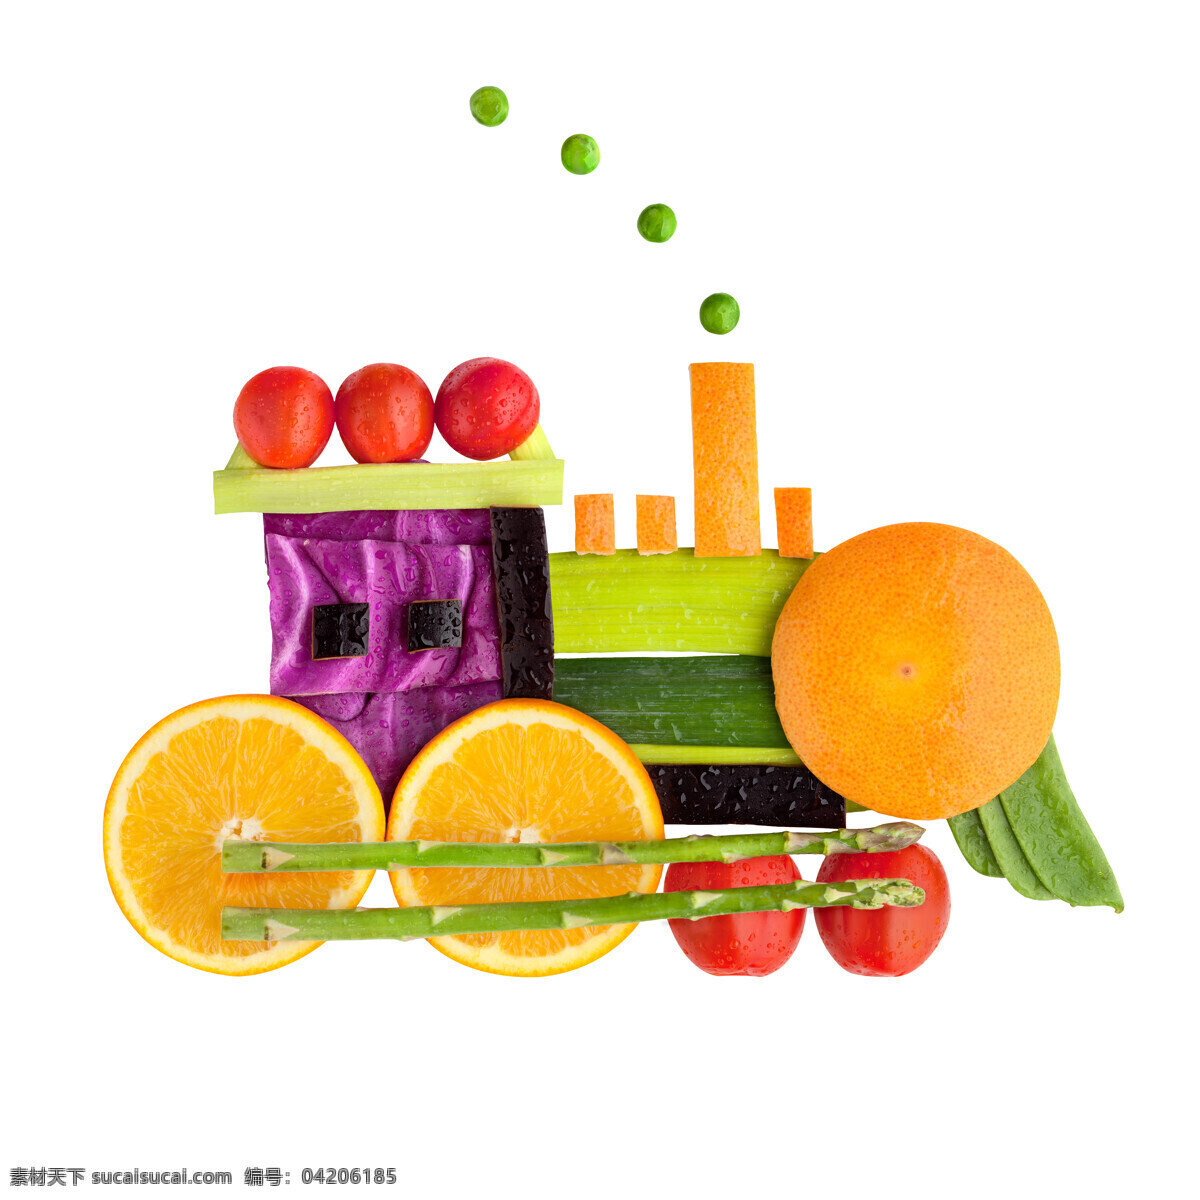 创意 火车 另类图片 创意火车 另类火车 小火车 粘贴画 蔬菜 果蔬 手工制作 手工作品 柠檬片 圣女果 水果 图片大全 高清图片 生物世界